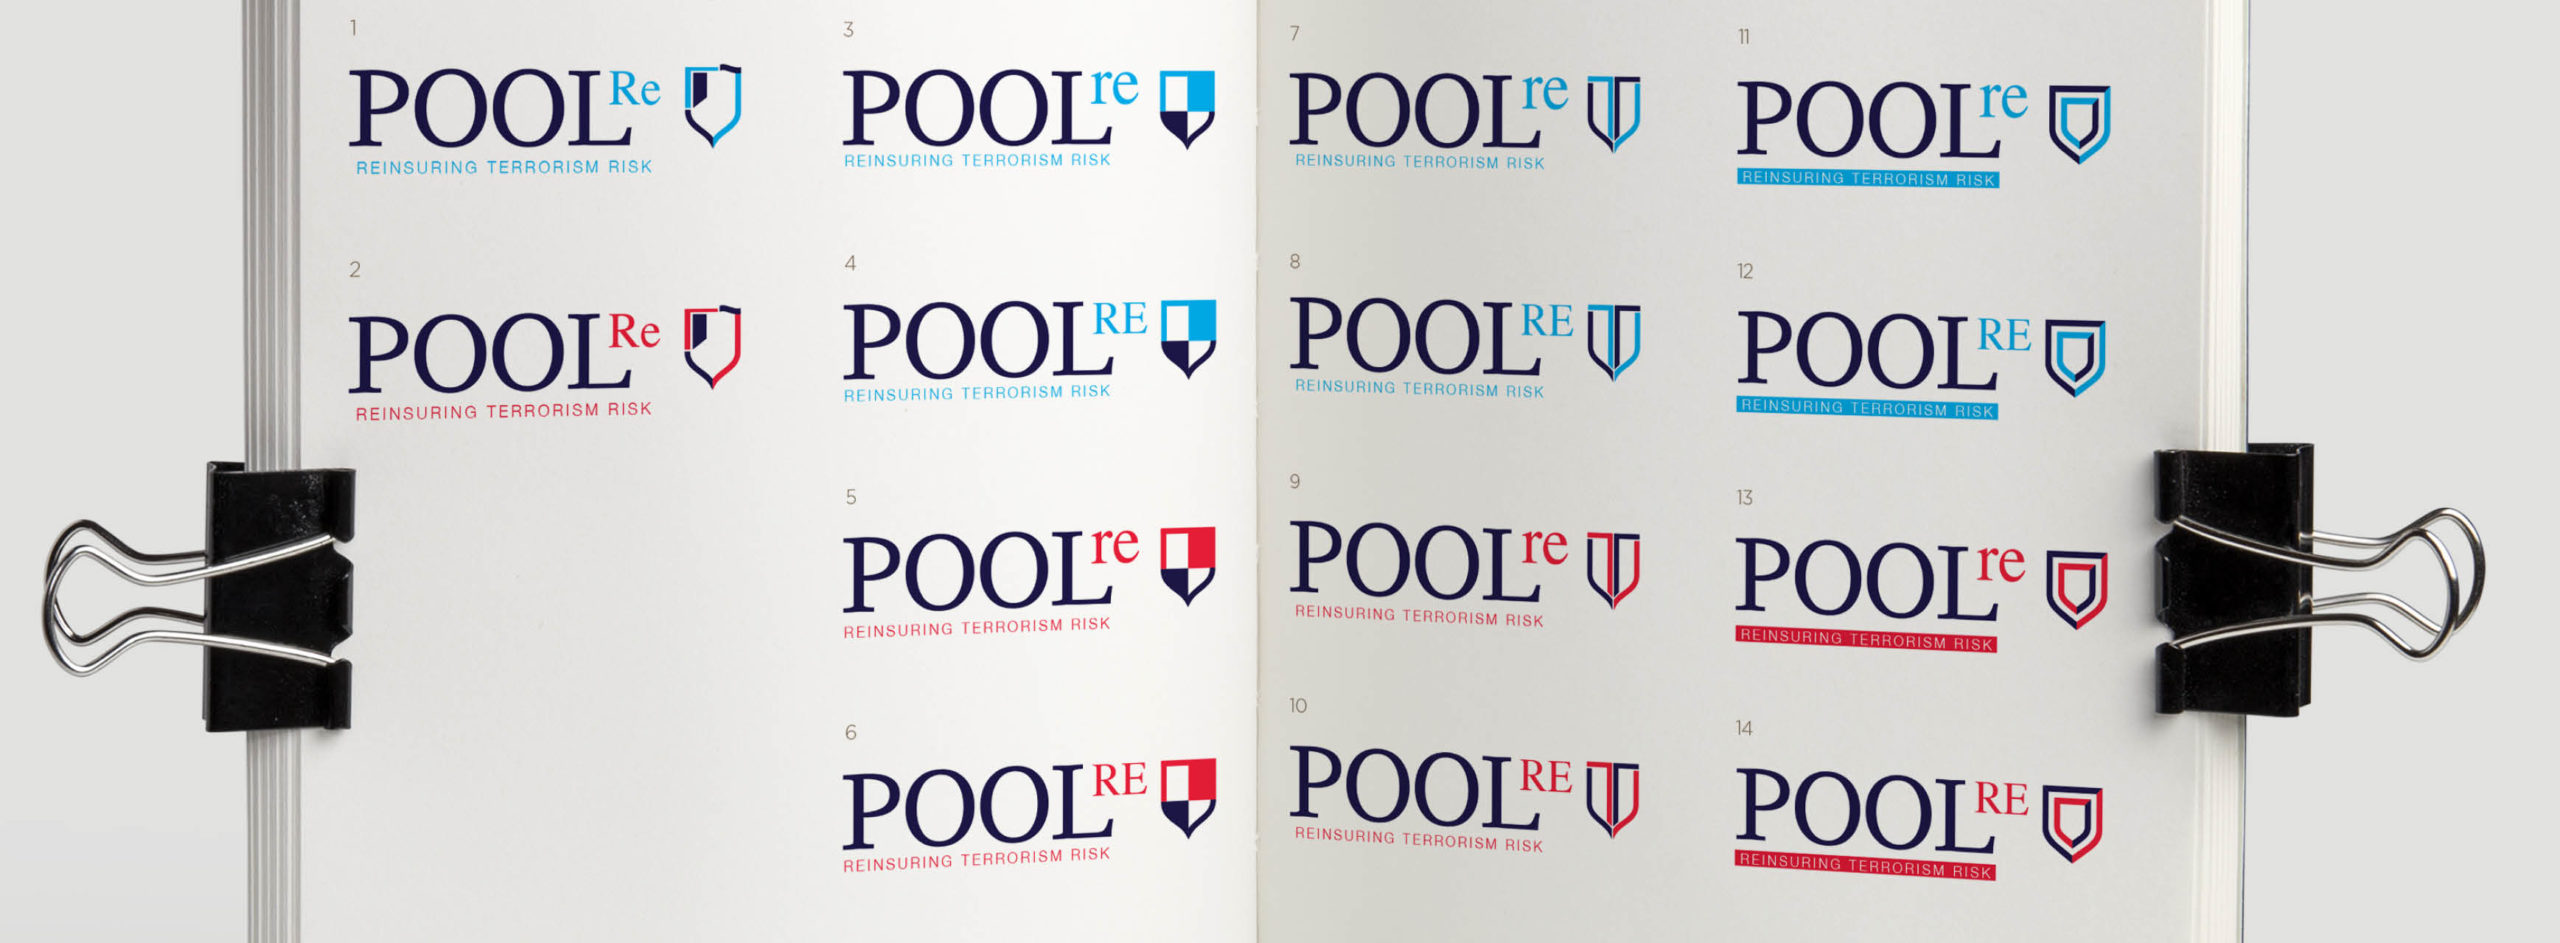 Pool Re branding, logo design, new logo, insurance branding and design